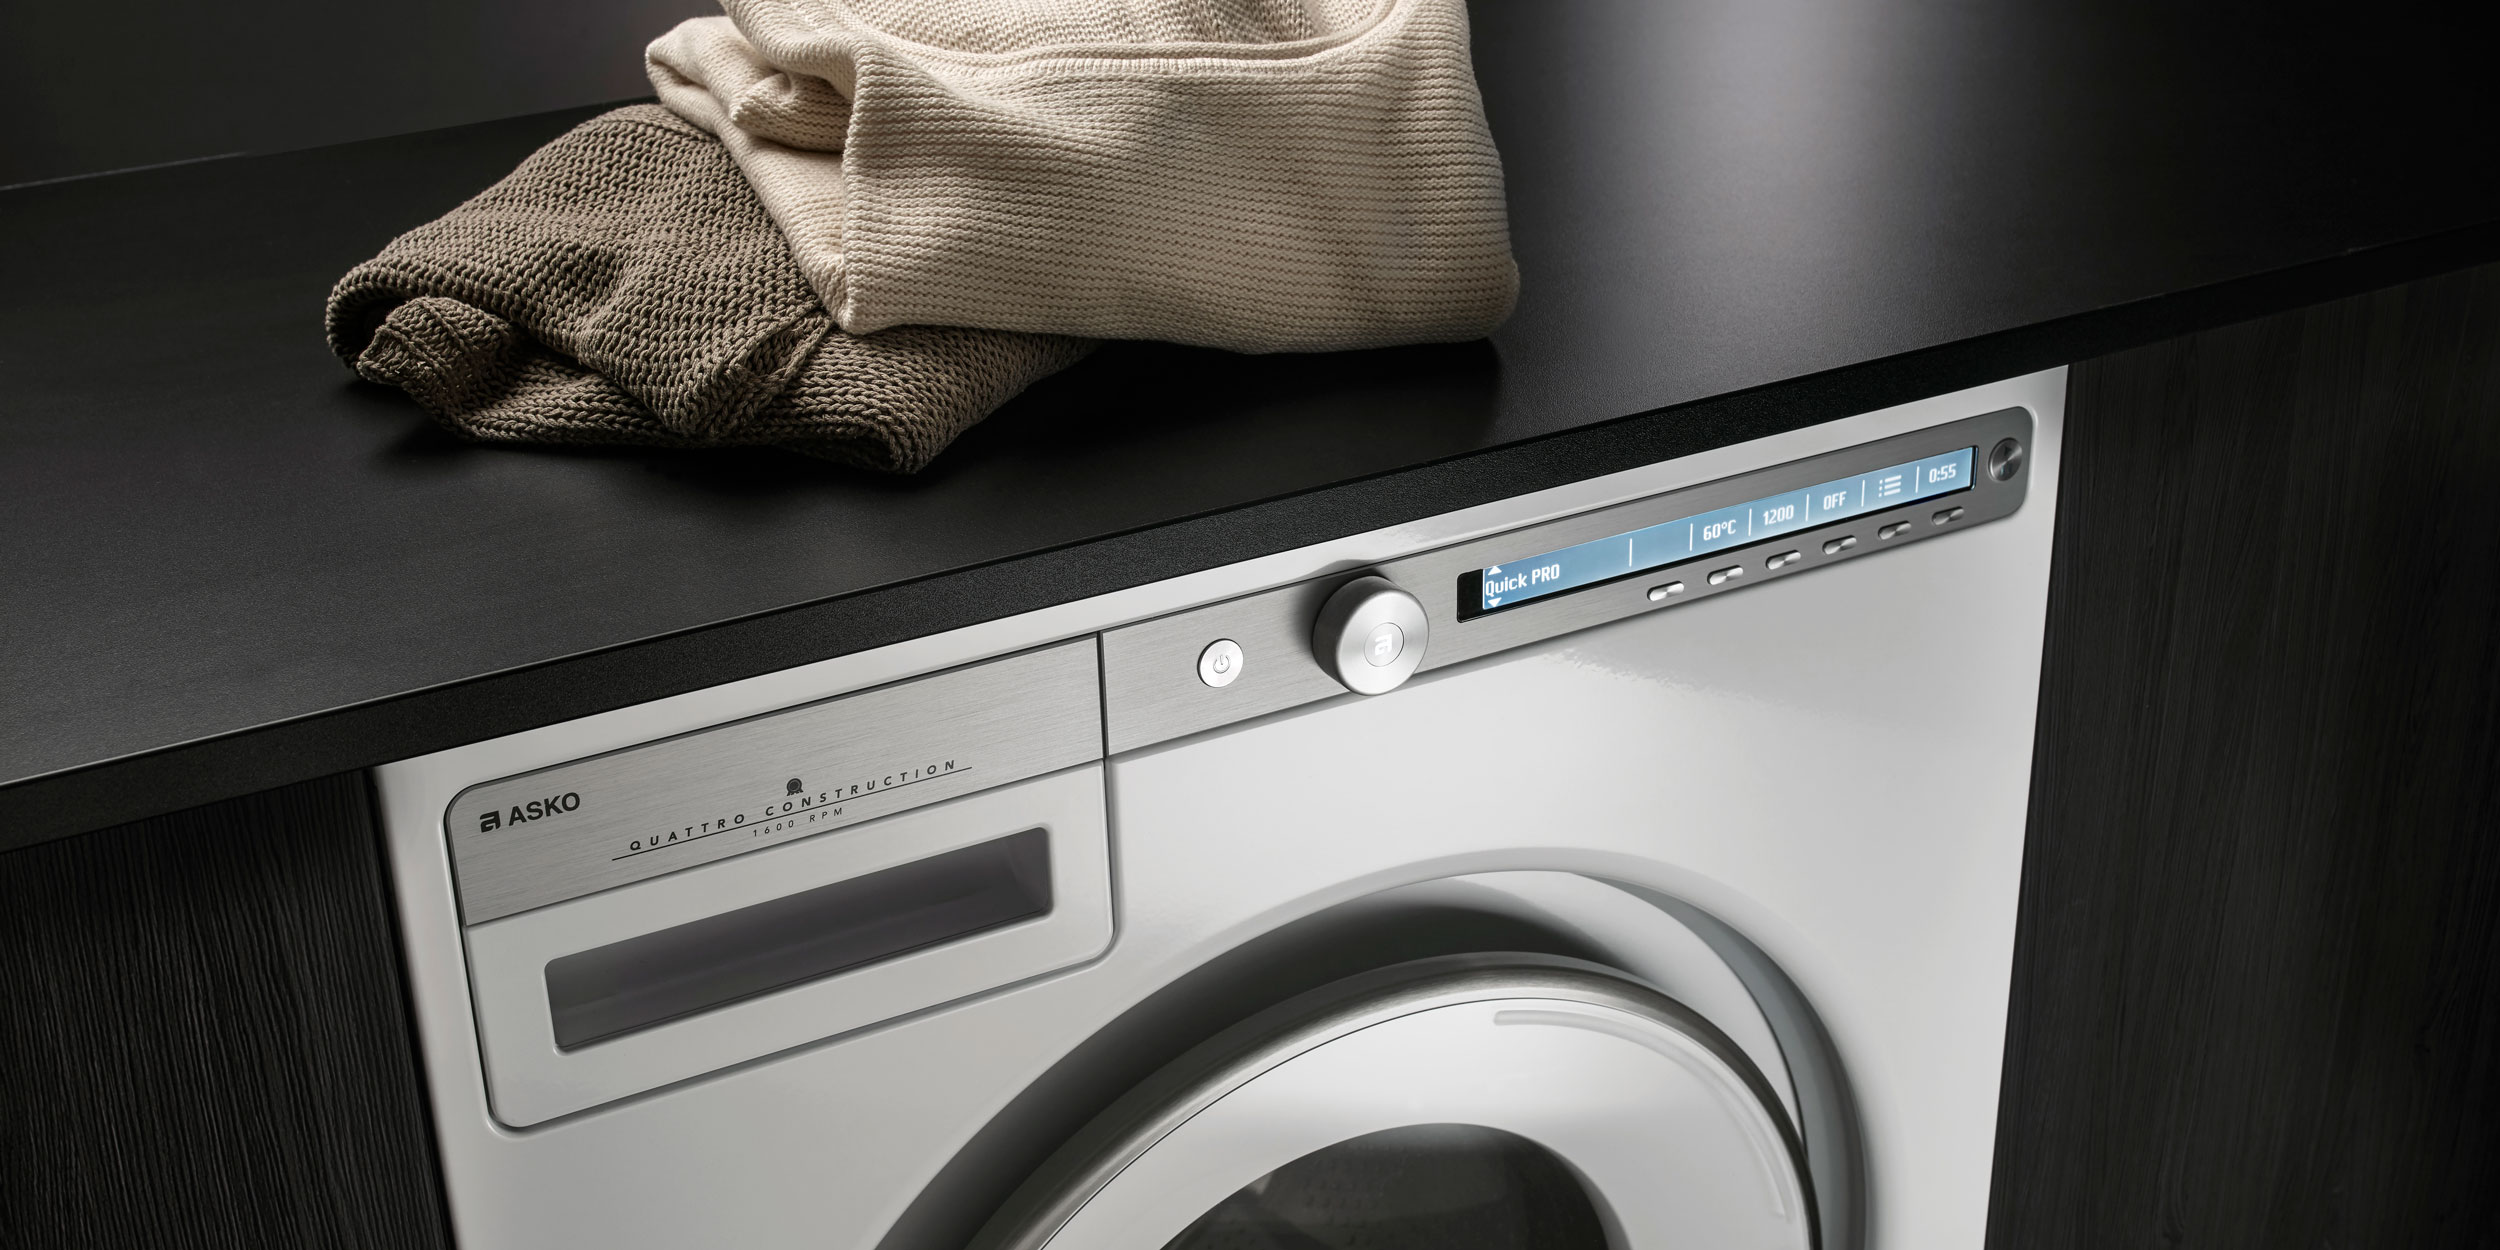 ASKO-Laundry-Washing-machines-Logic.jpg